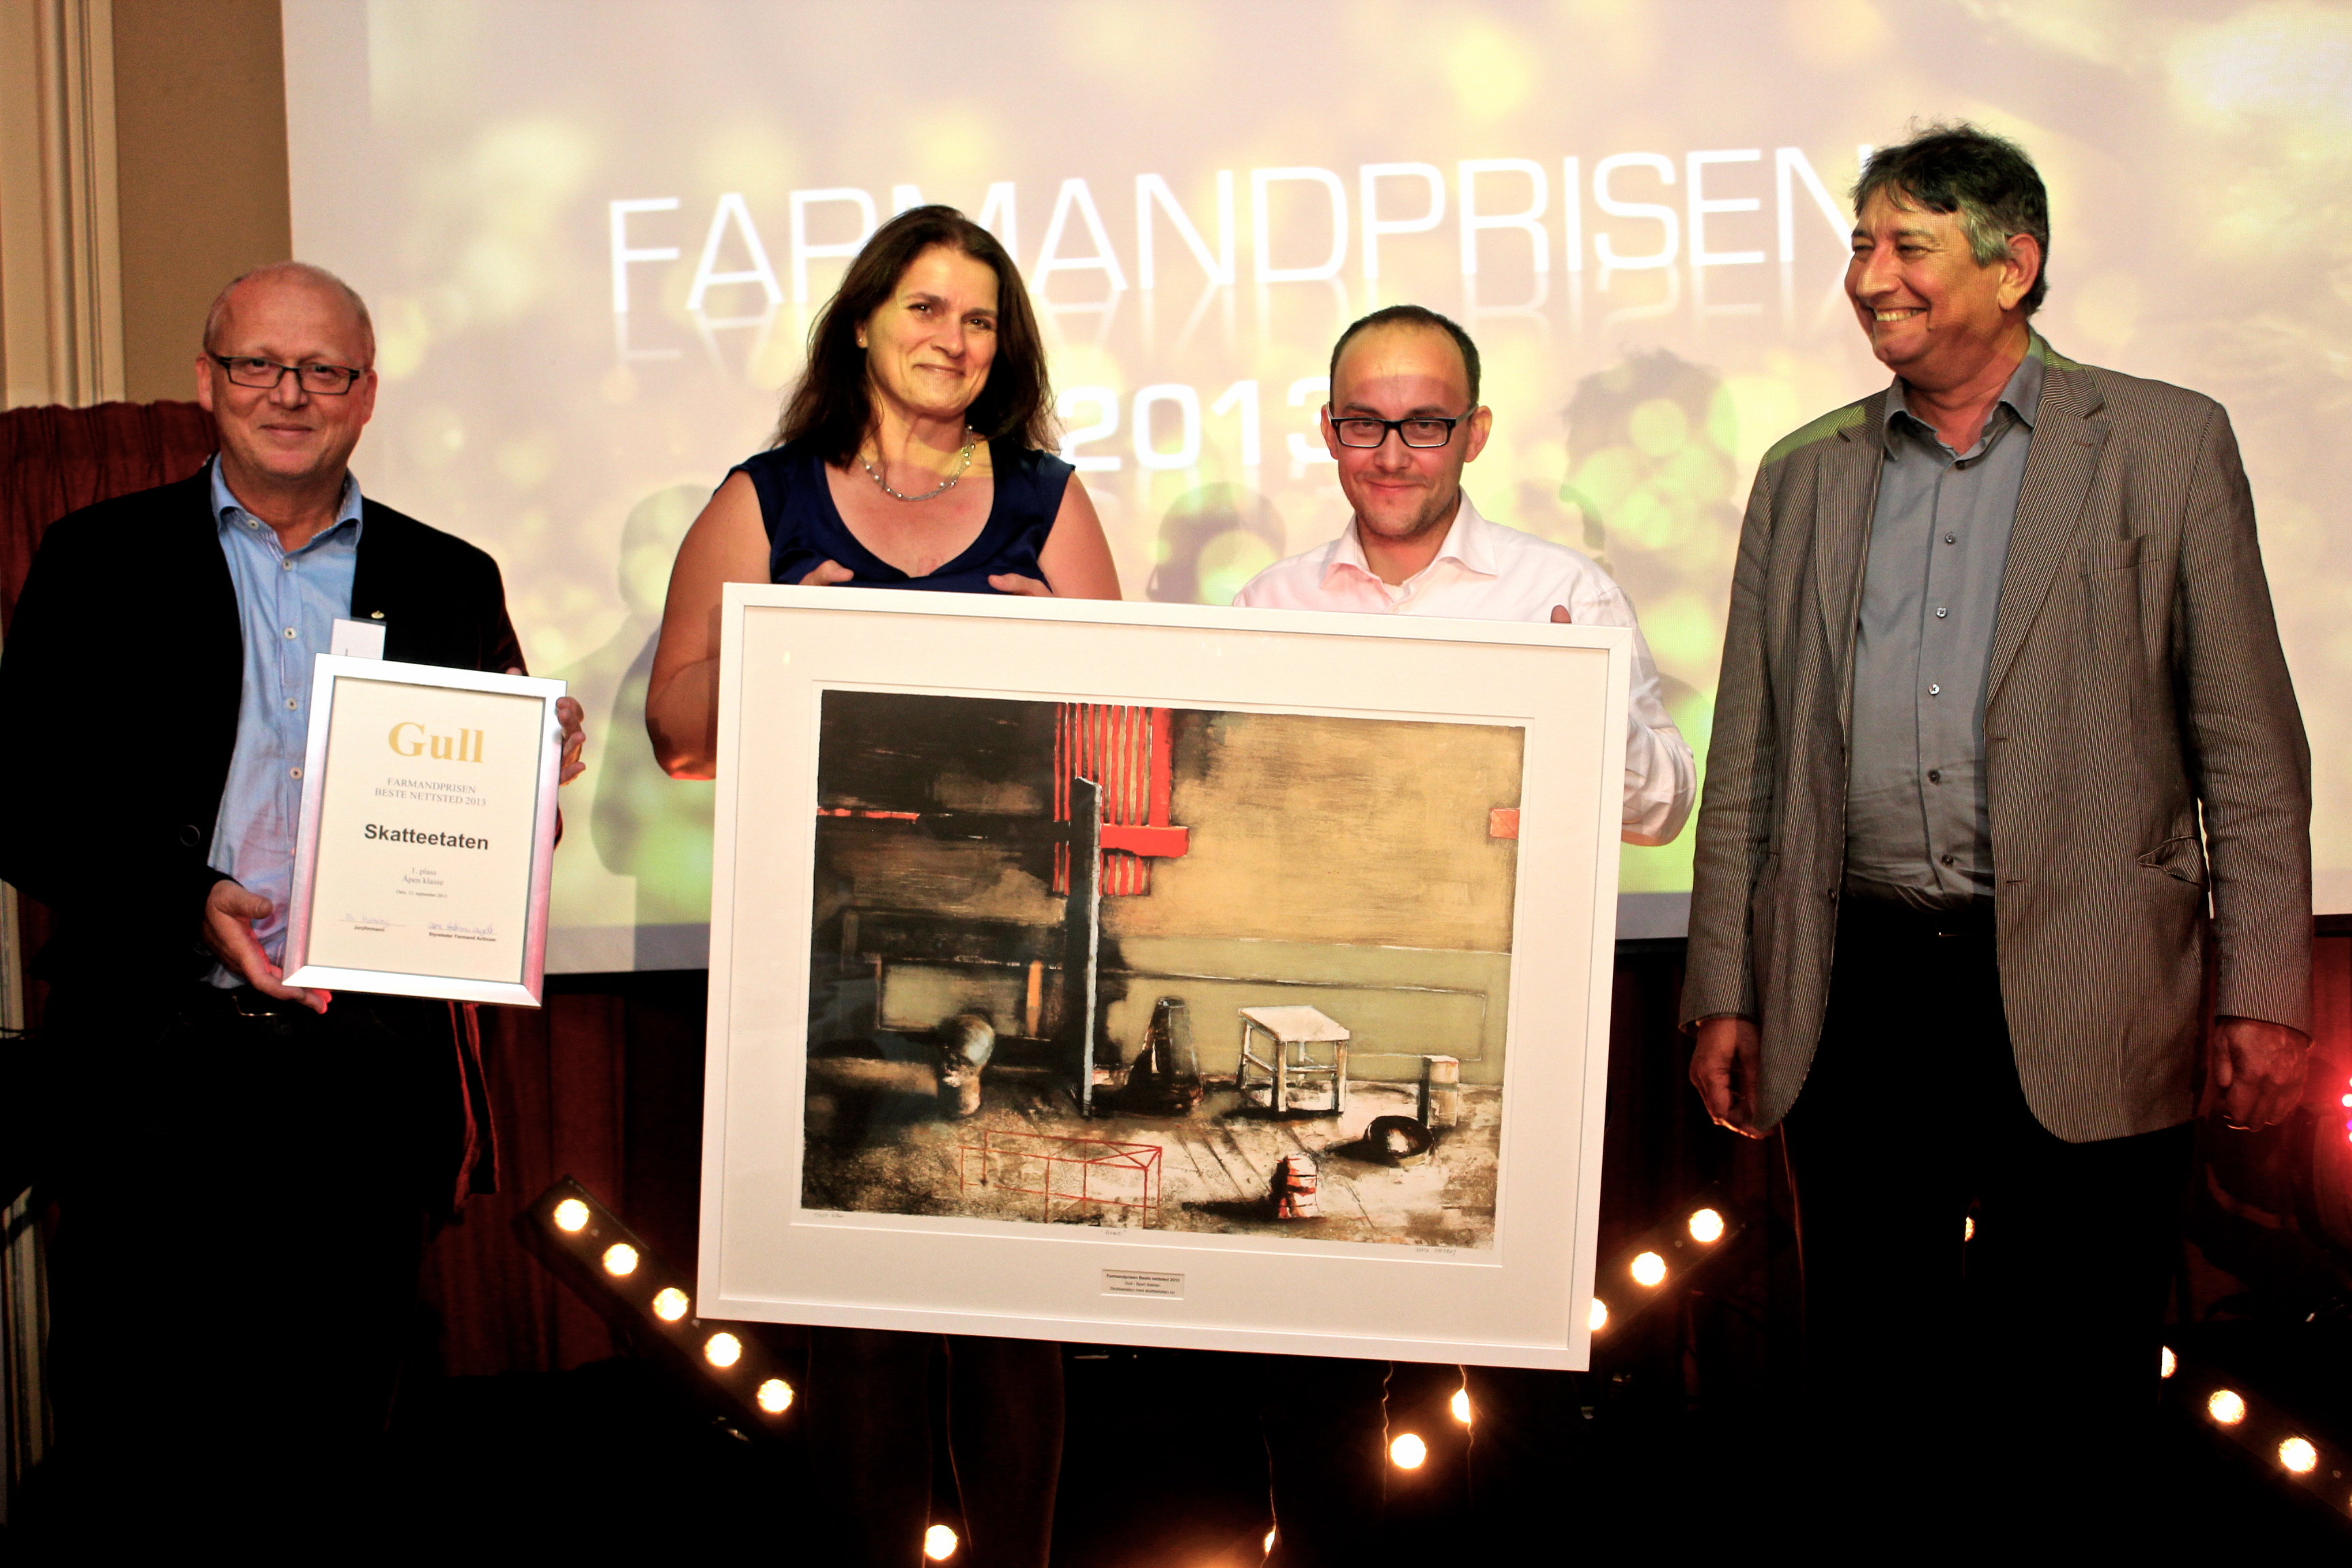 Farmandprisen Beste nettted 2013 - Åpen klasse nr 1: Skatteetaten